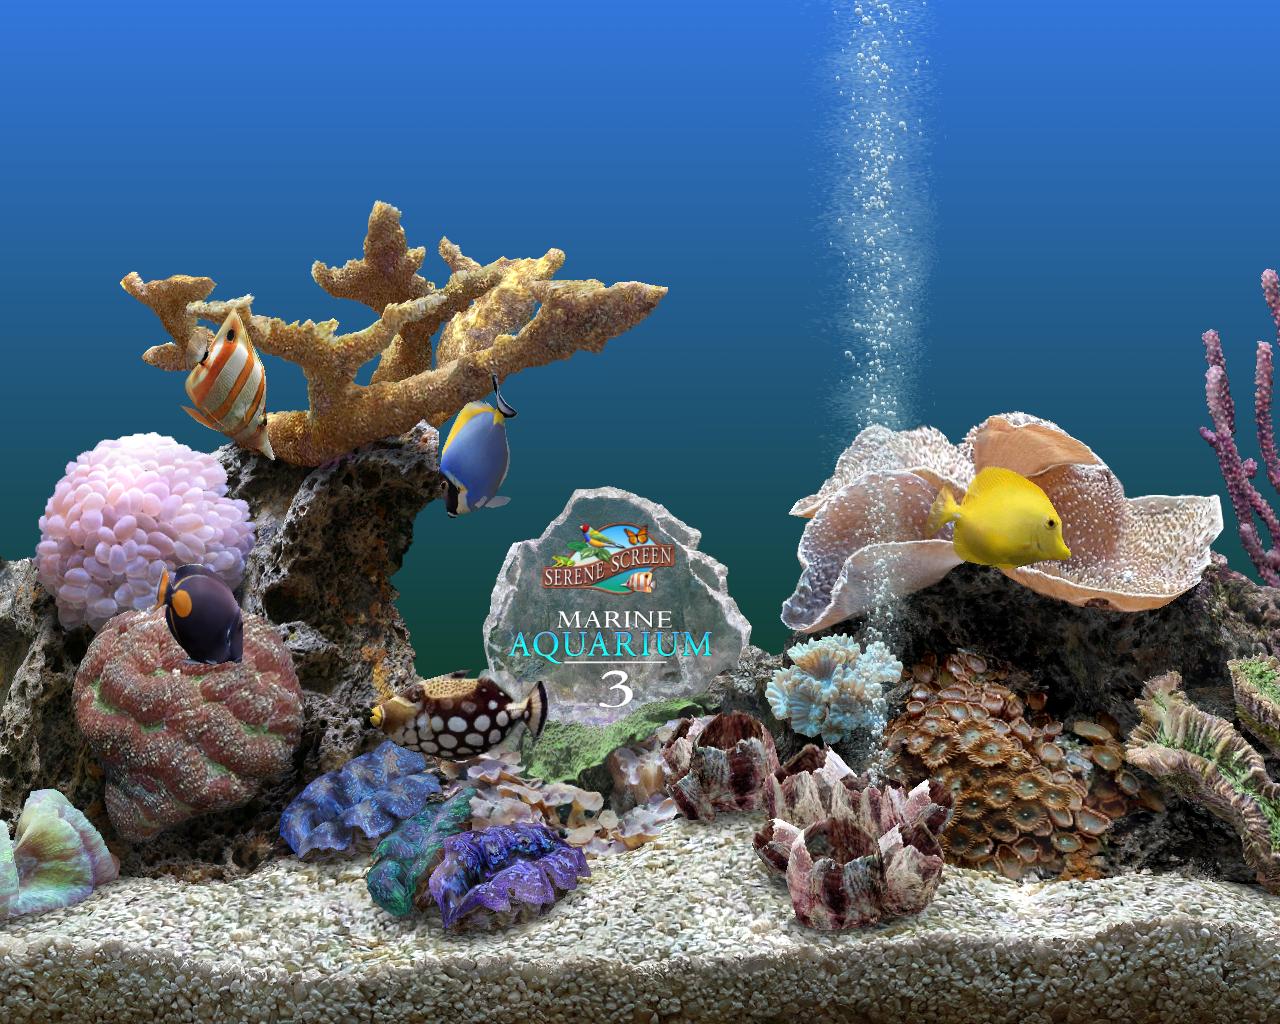 marine aquarium screensaver issues